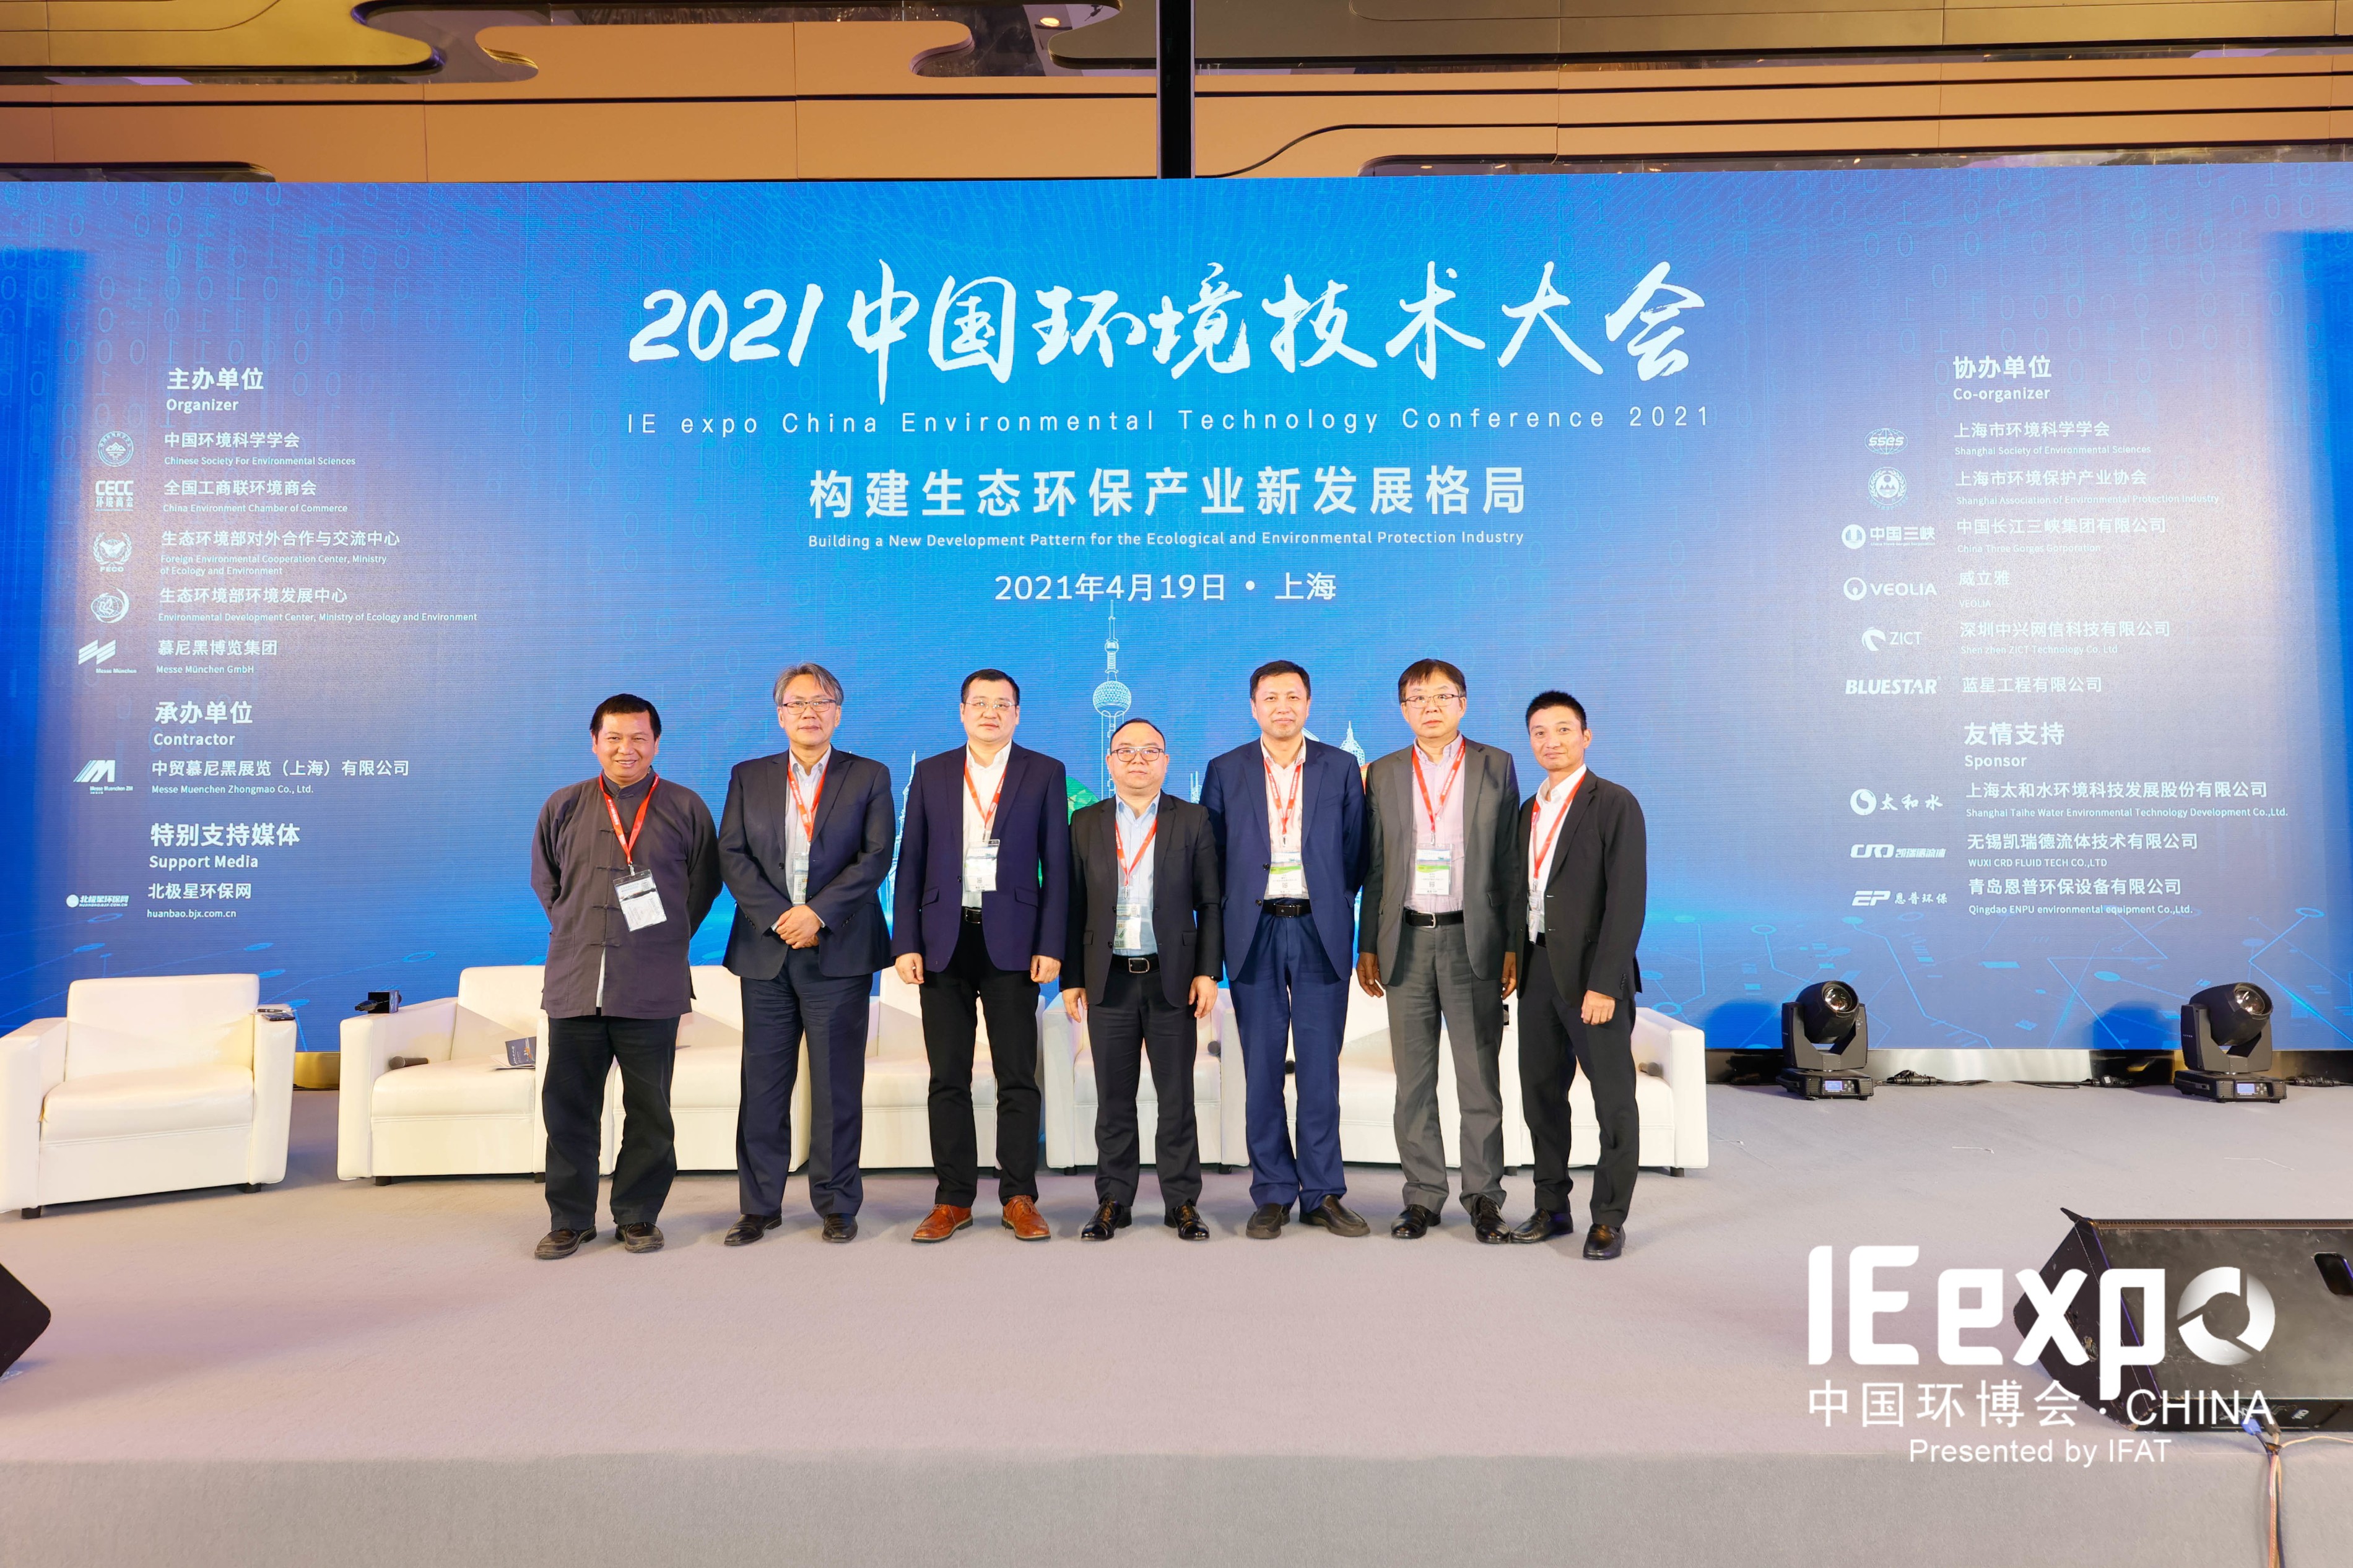 新格局，新发展 | 中科三清工业园区智慧大气解决方案亮相2021中国环境技术大会